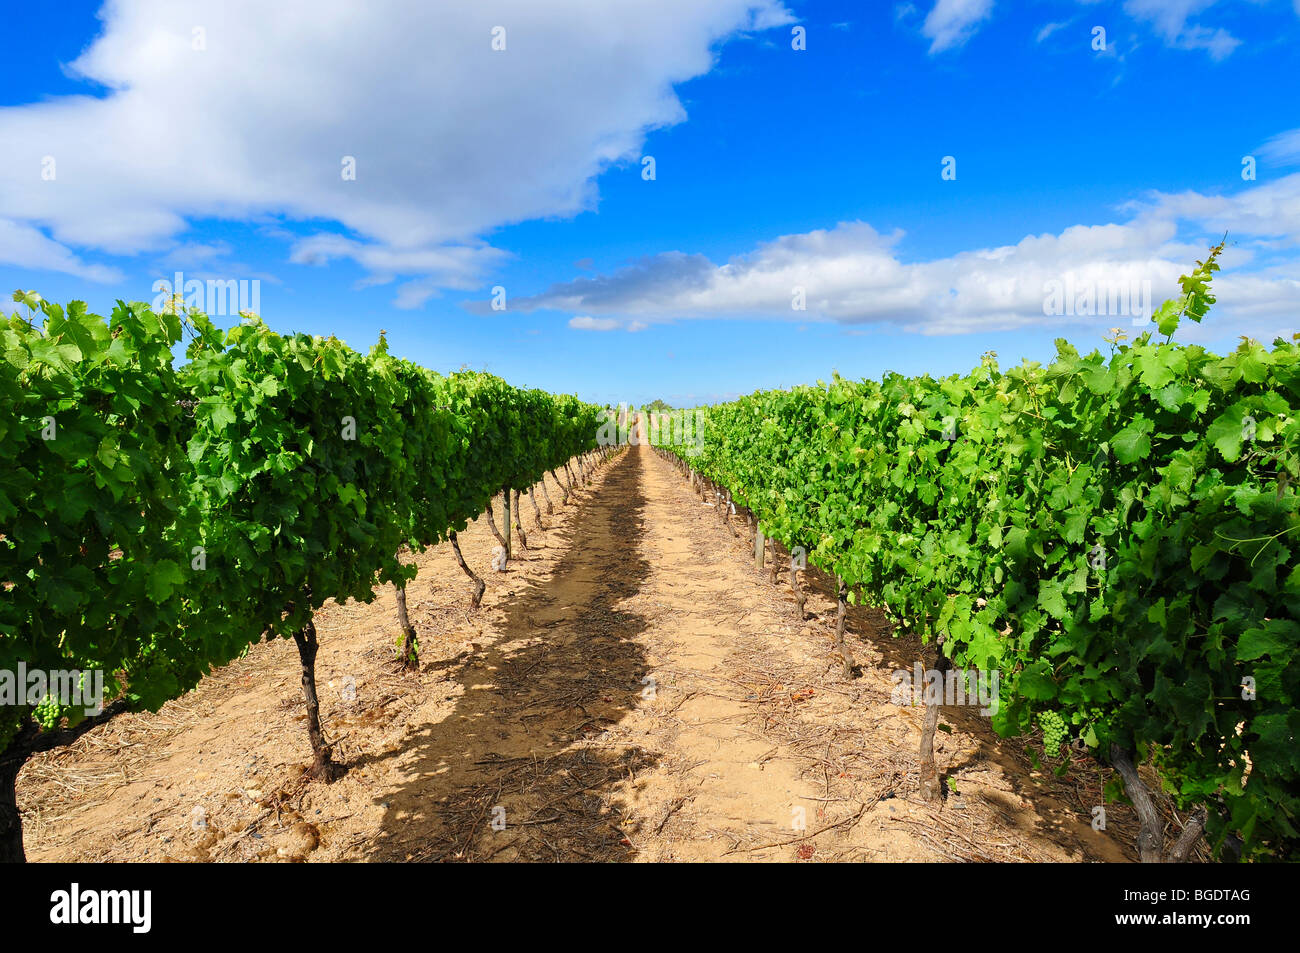 Un paysage photographie d'une rangée de vignes dans un vignoble à Cape Town Afrique du Sud Banque D'Images